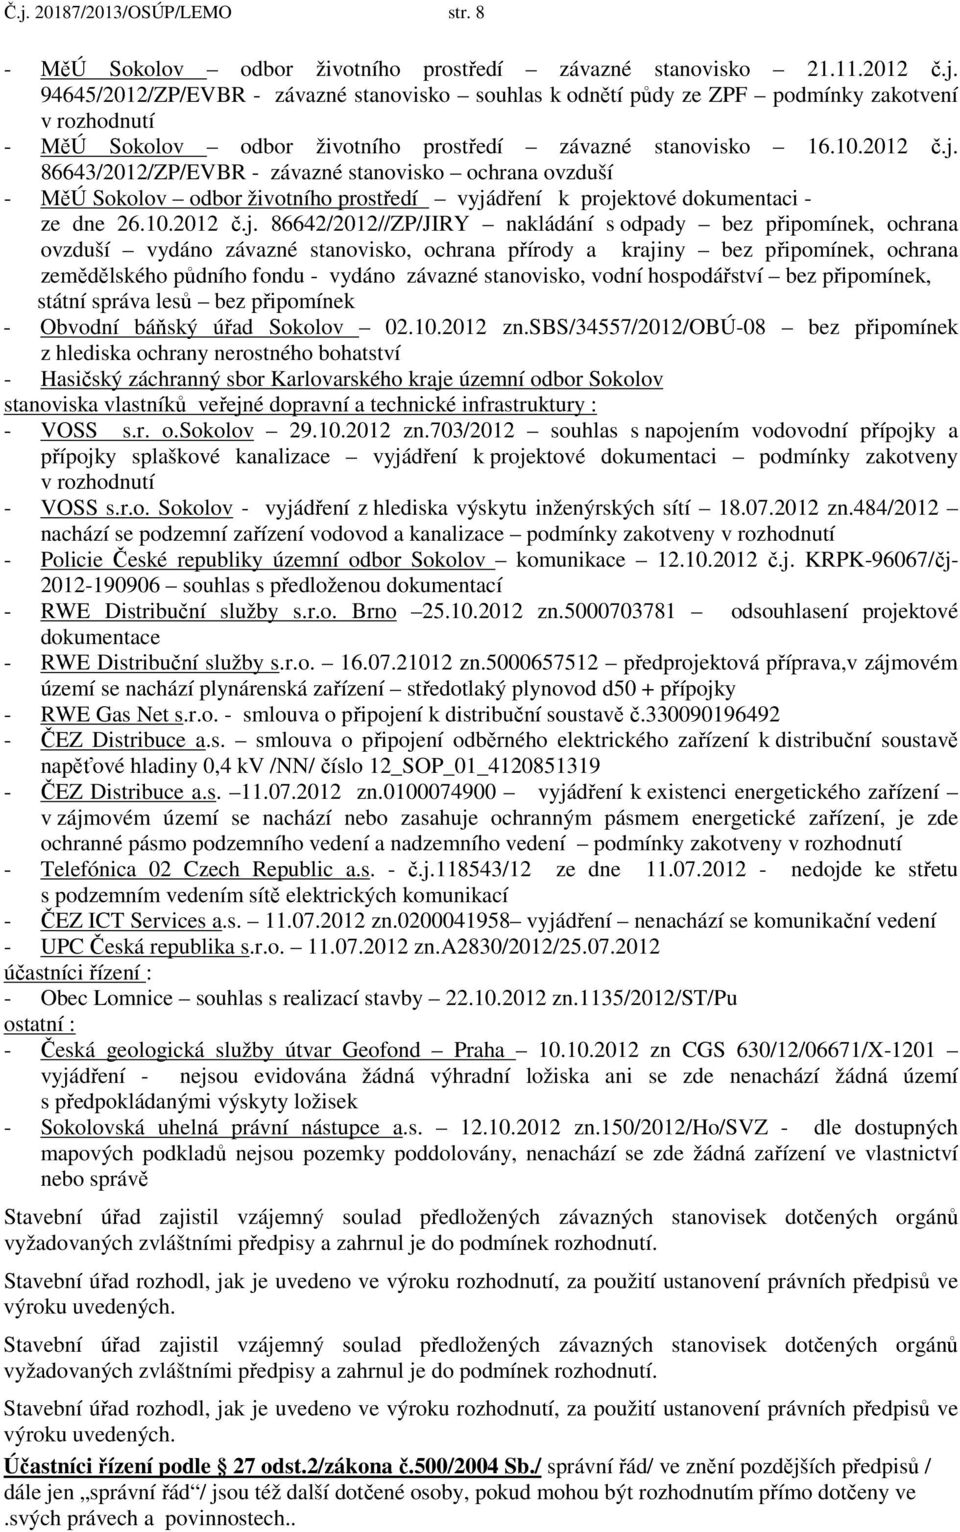 86643/2012/ZP/EVBR - závazné stanovisko ochrana ovzduší - MěÚ Sokolov odbor životního prostředí vyjádření k projektové dokumentaci - ze dne 26.